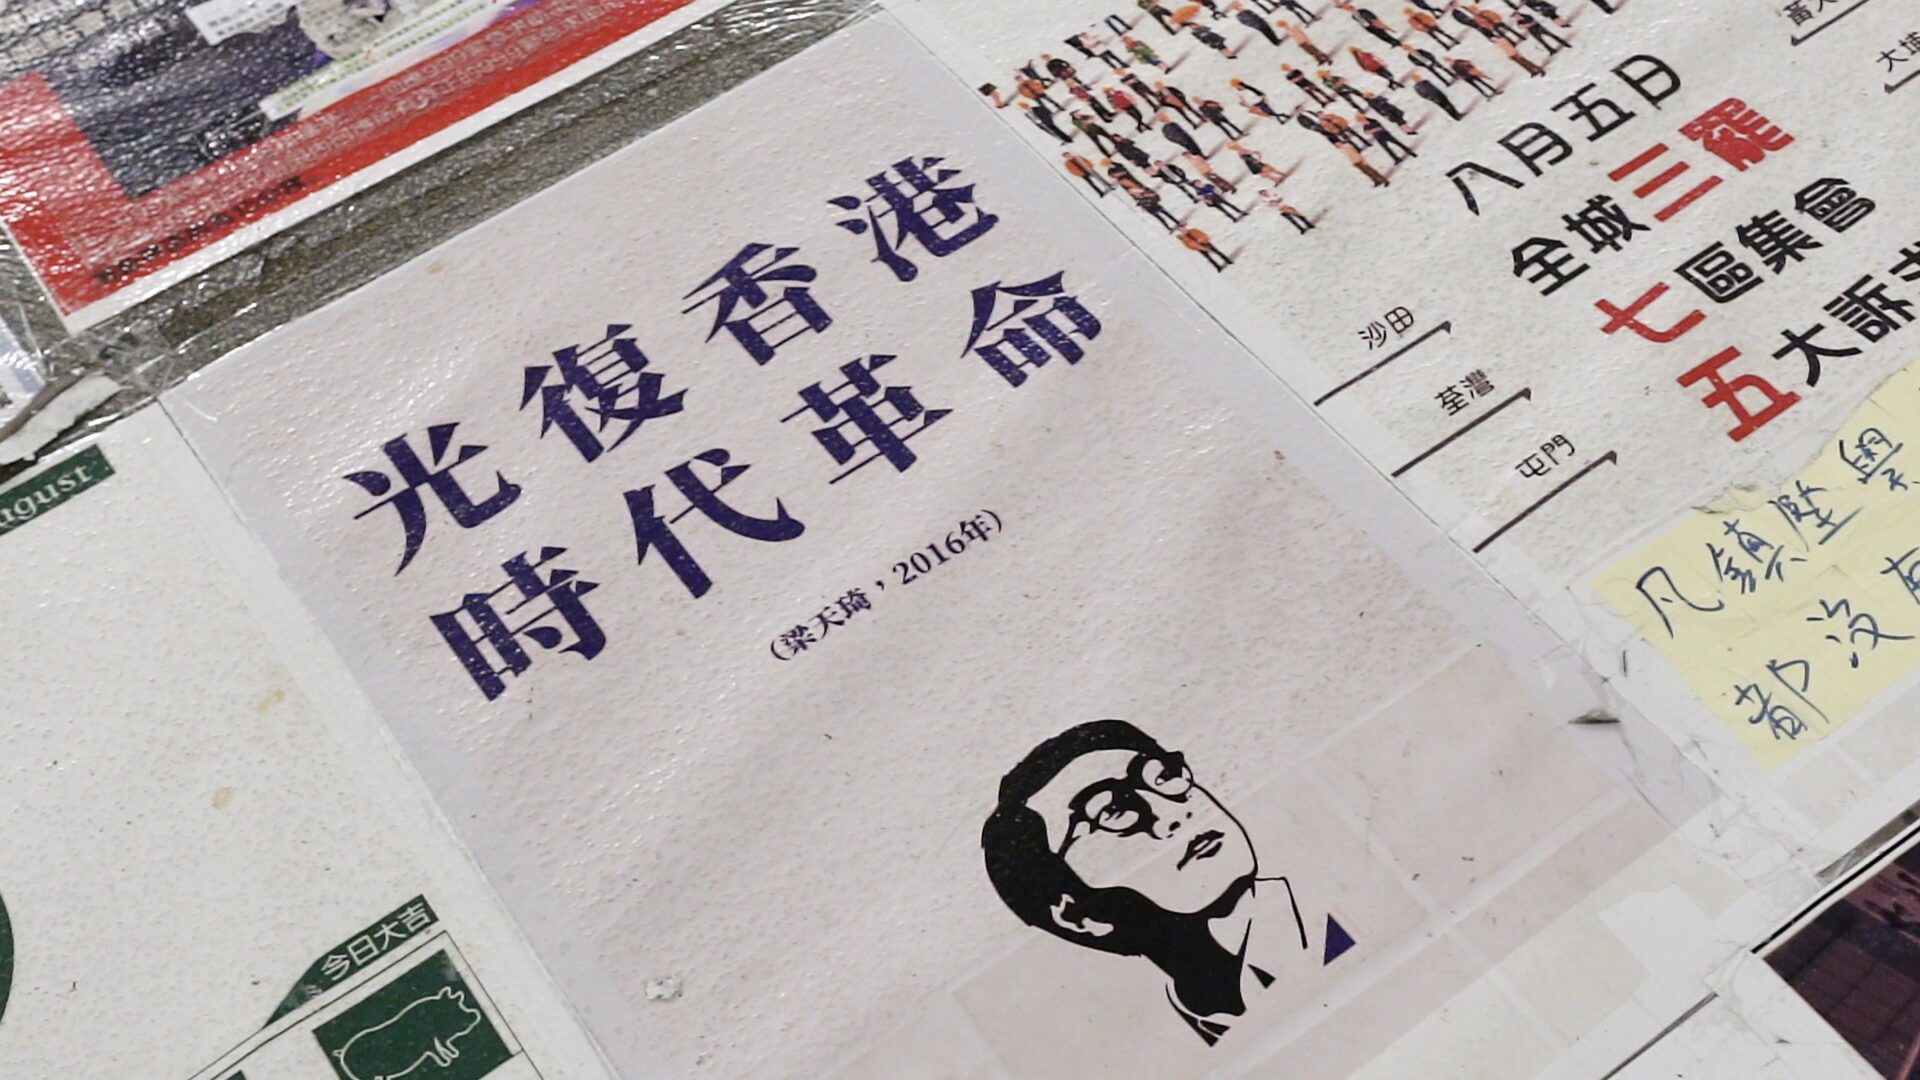 검은 자형화 스틸컷1. 파란색 한자로 ‘광복홍콩 시대혁명’ 이라고 쓰여있는 인쇄물. 주변에는 다른 인쇄물들이 붙어 있다.